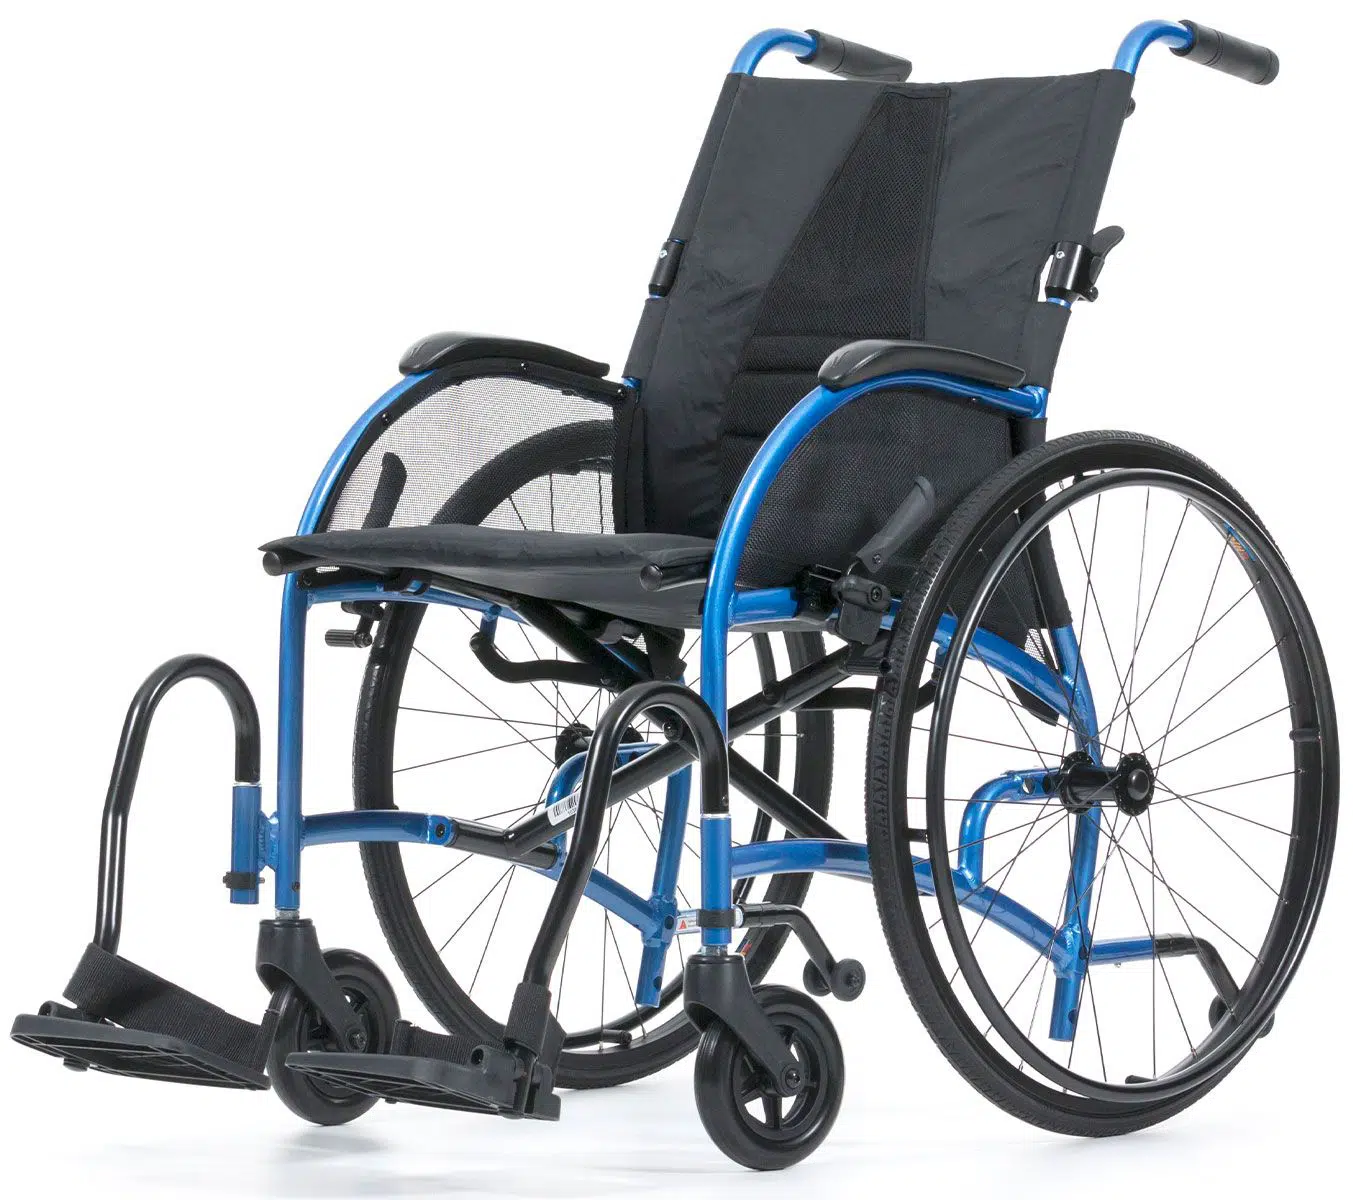 belangrijk bevestigen ondernemer Strongback Ergonomische ultra lichtgewicht rolstoel - ViaErwin